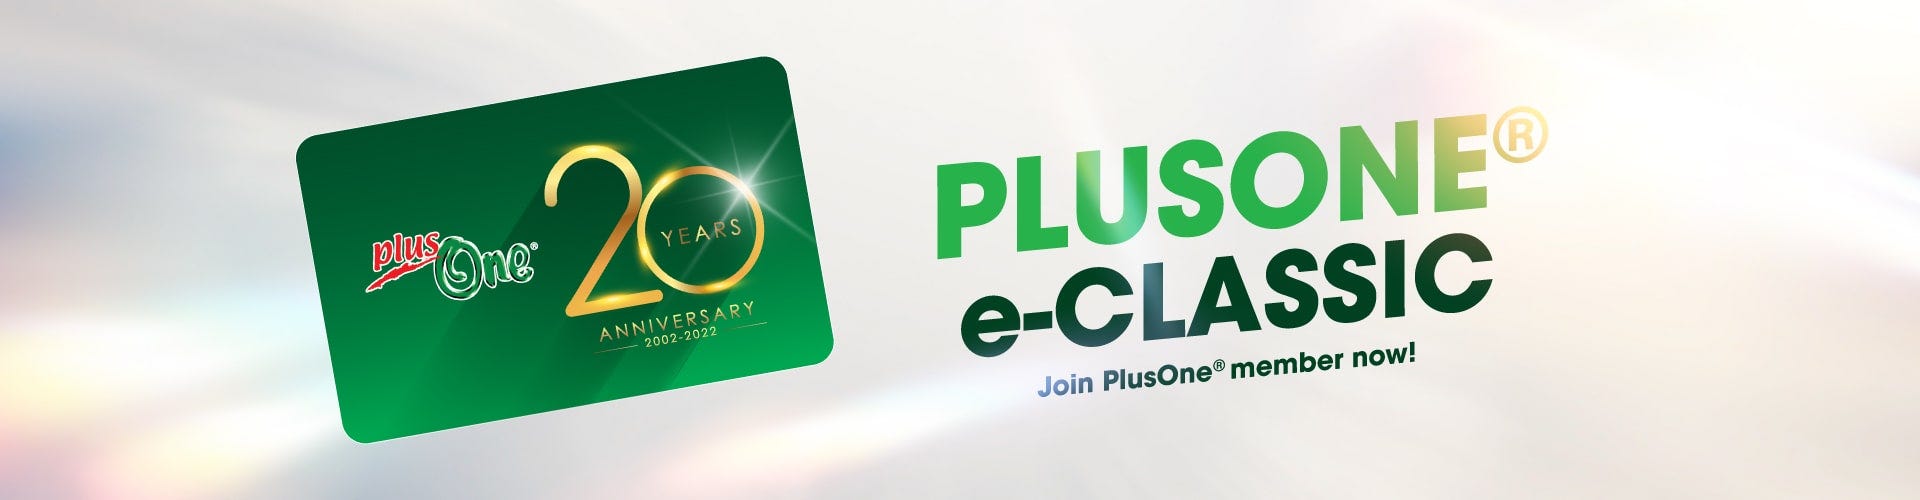 PlusOne e-Classic